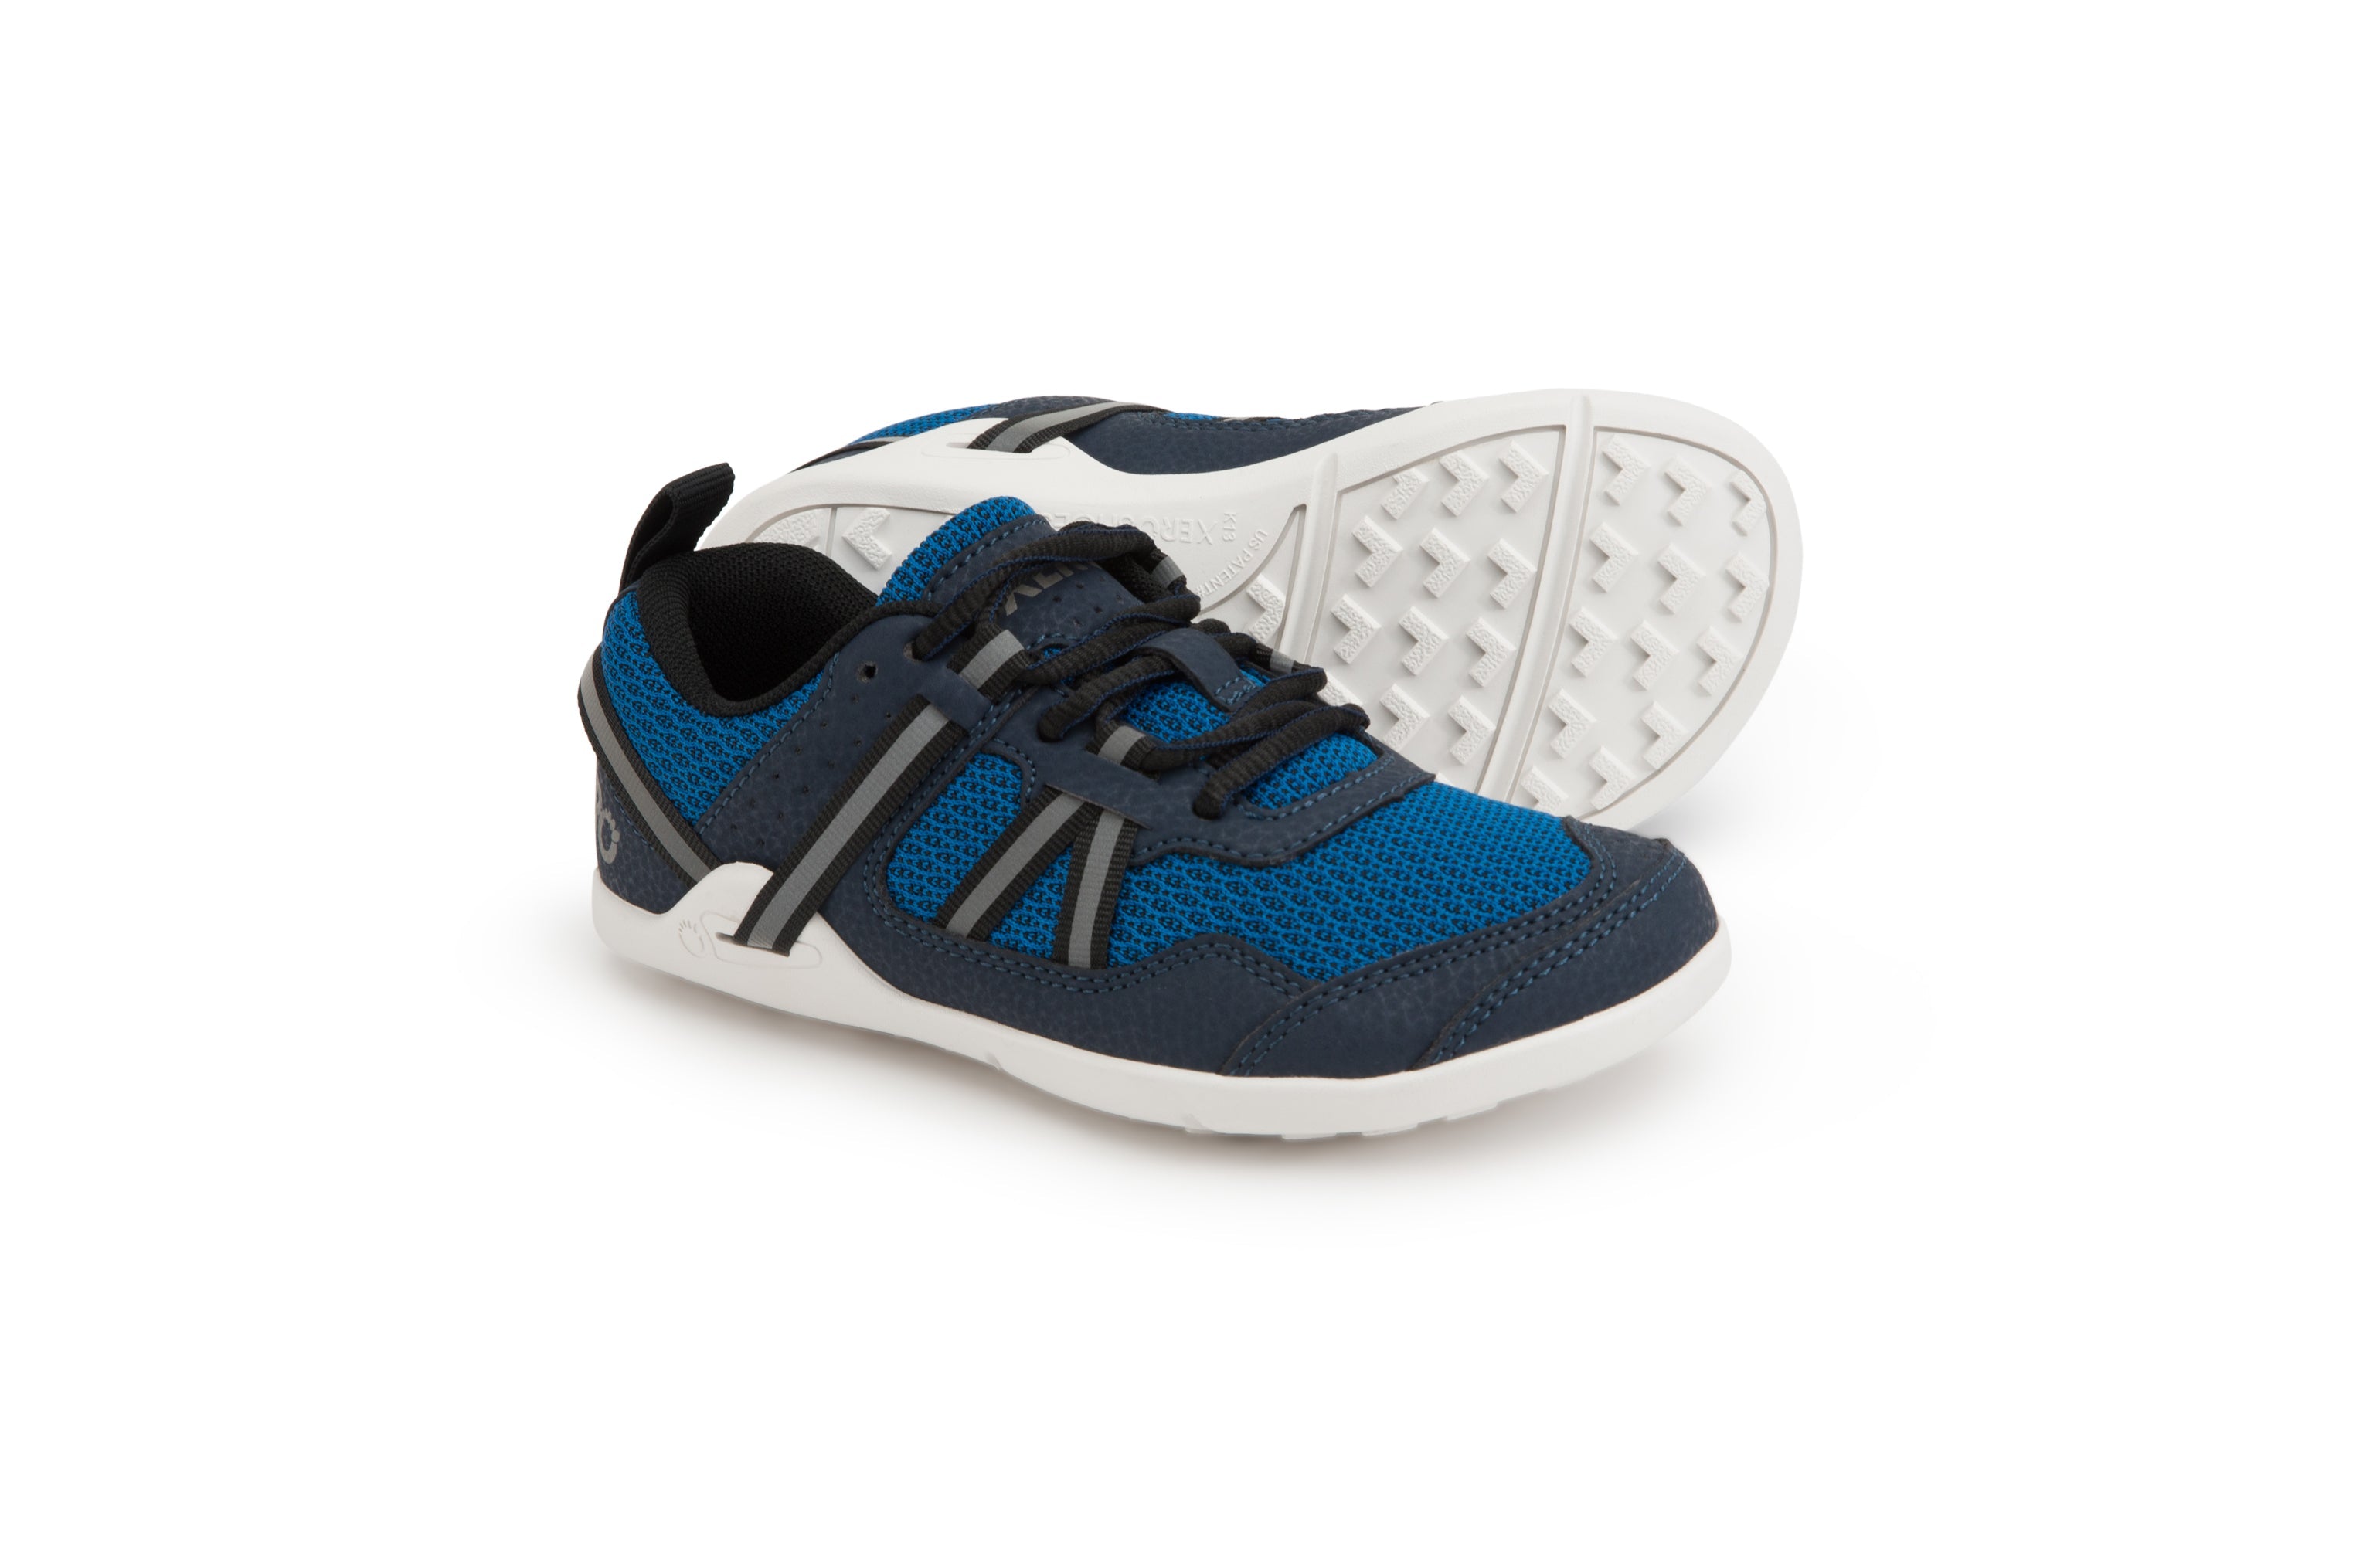 Xero Shoes Prio Kids barfods træningssko/sneakers til børn i farven mykonos blue, par